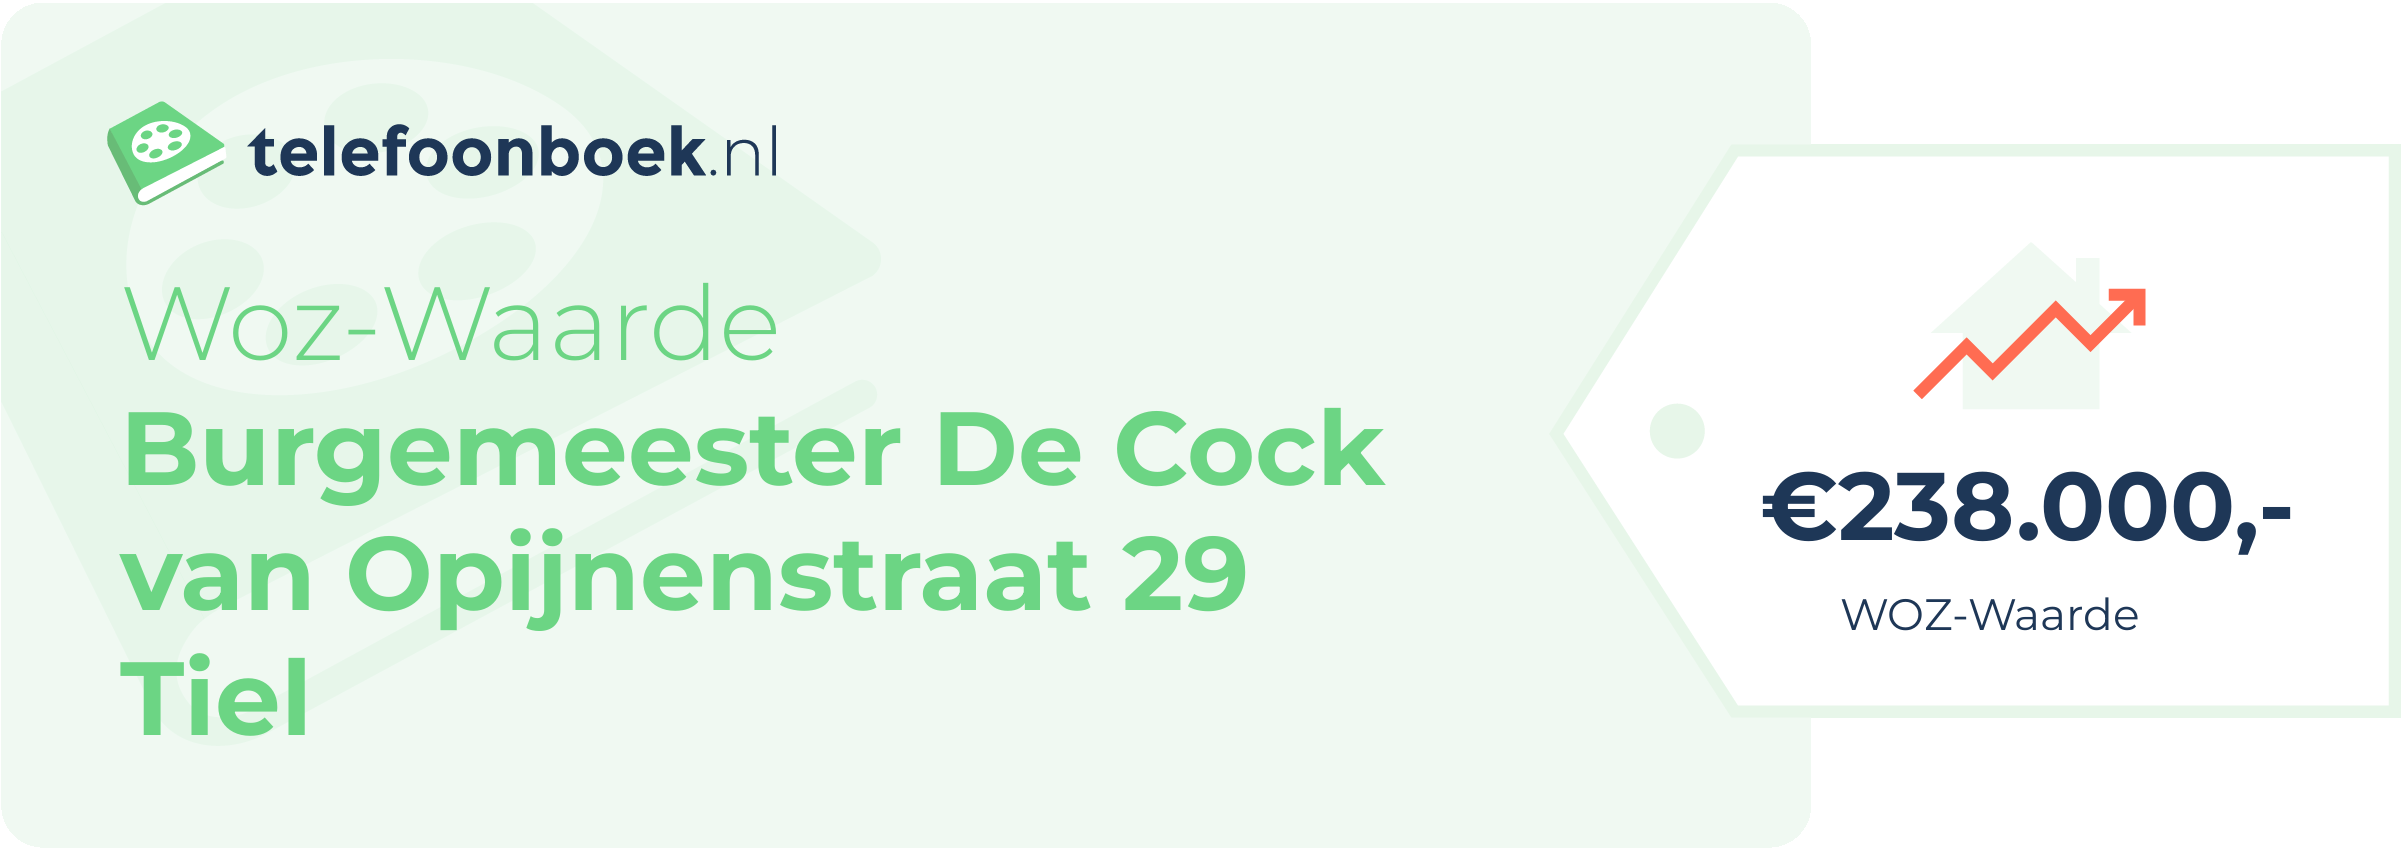 WOZ-waarde Burgemeester De Cock Van Opijnenstraat 29 Tiel